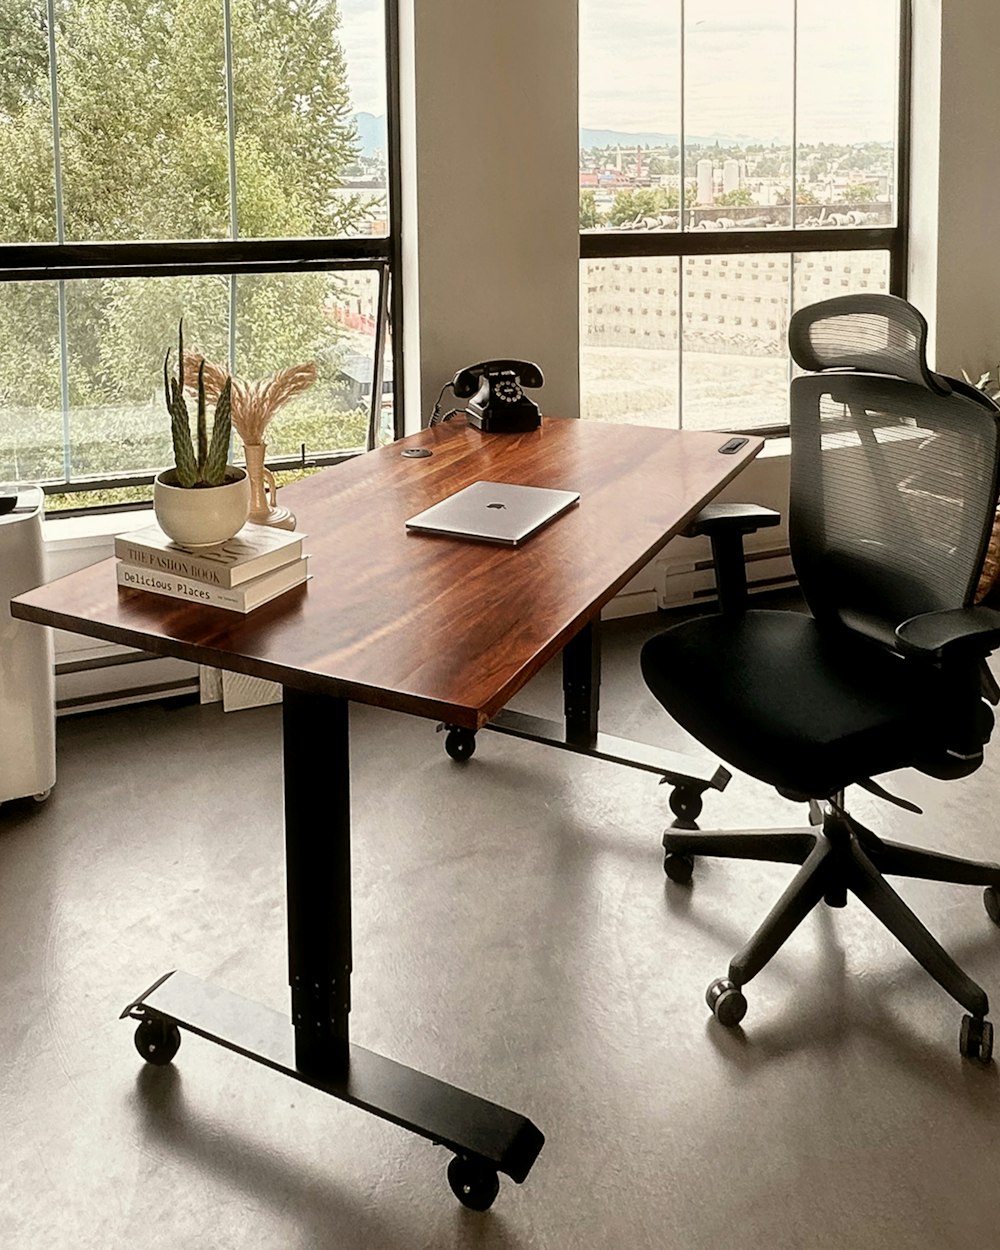 Un escritorio con una computadora portátil en una oficina